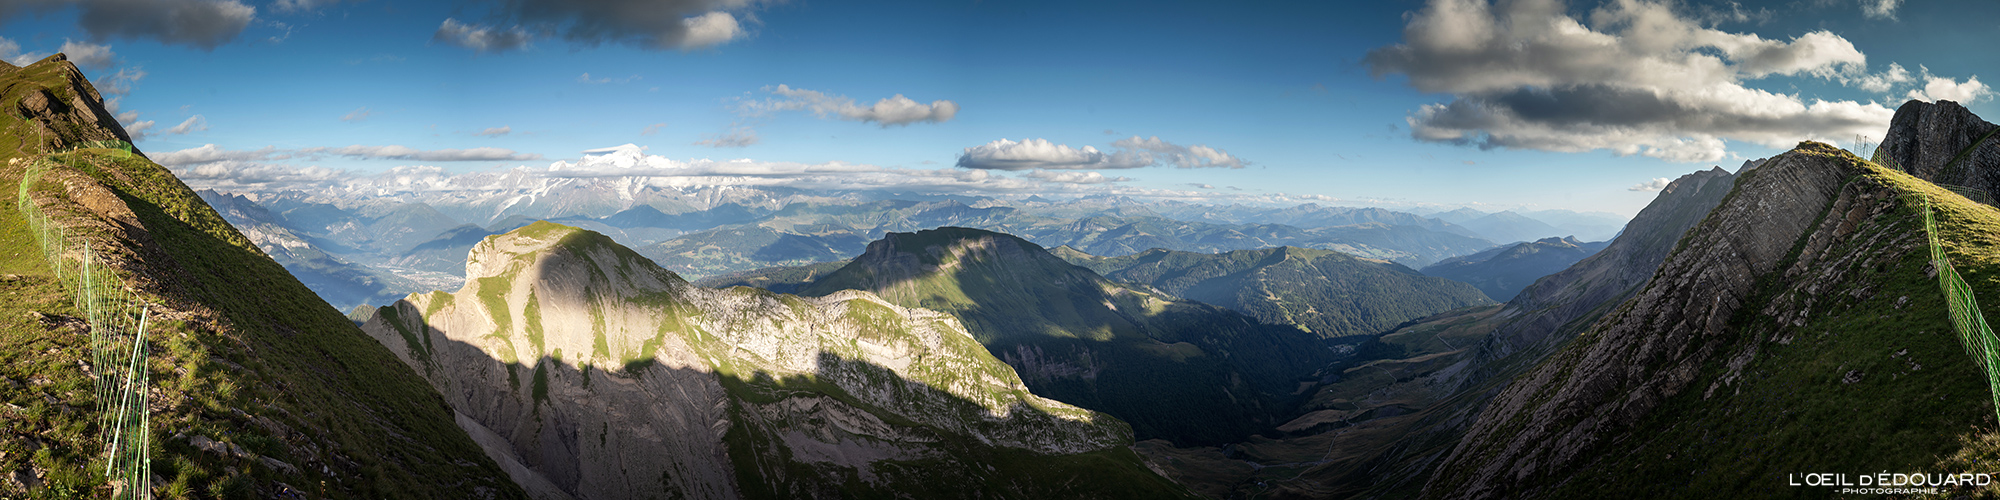 Vue panorama Combe de Tardevant Chaîne des Aravis Haute-Savoie Alpes France Randonnée Montagne Paysage Nature Outdoor French Alps Mountain Landscape Hike Hiking